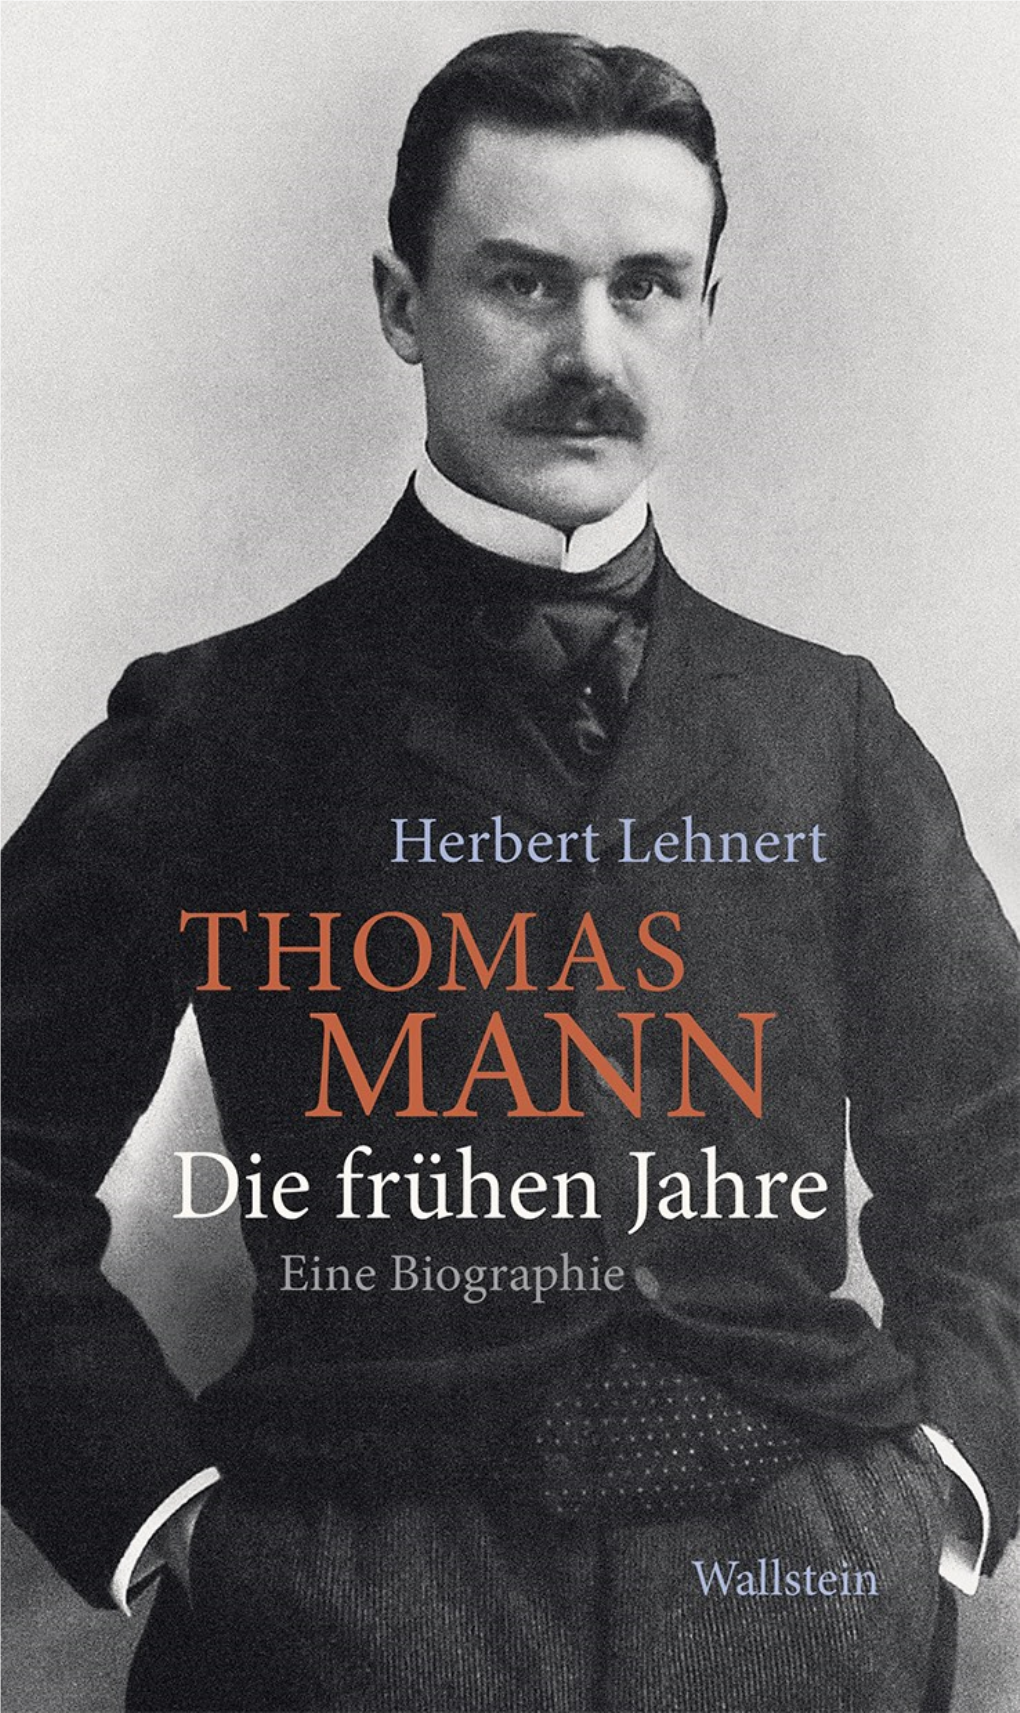 Herbert Lehnert Thomas Mann